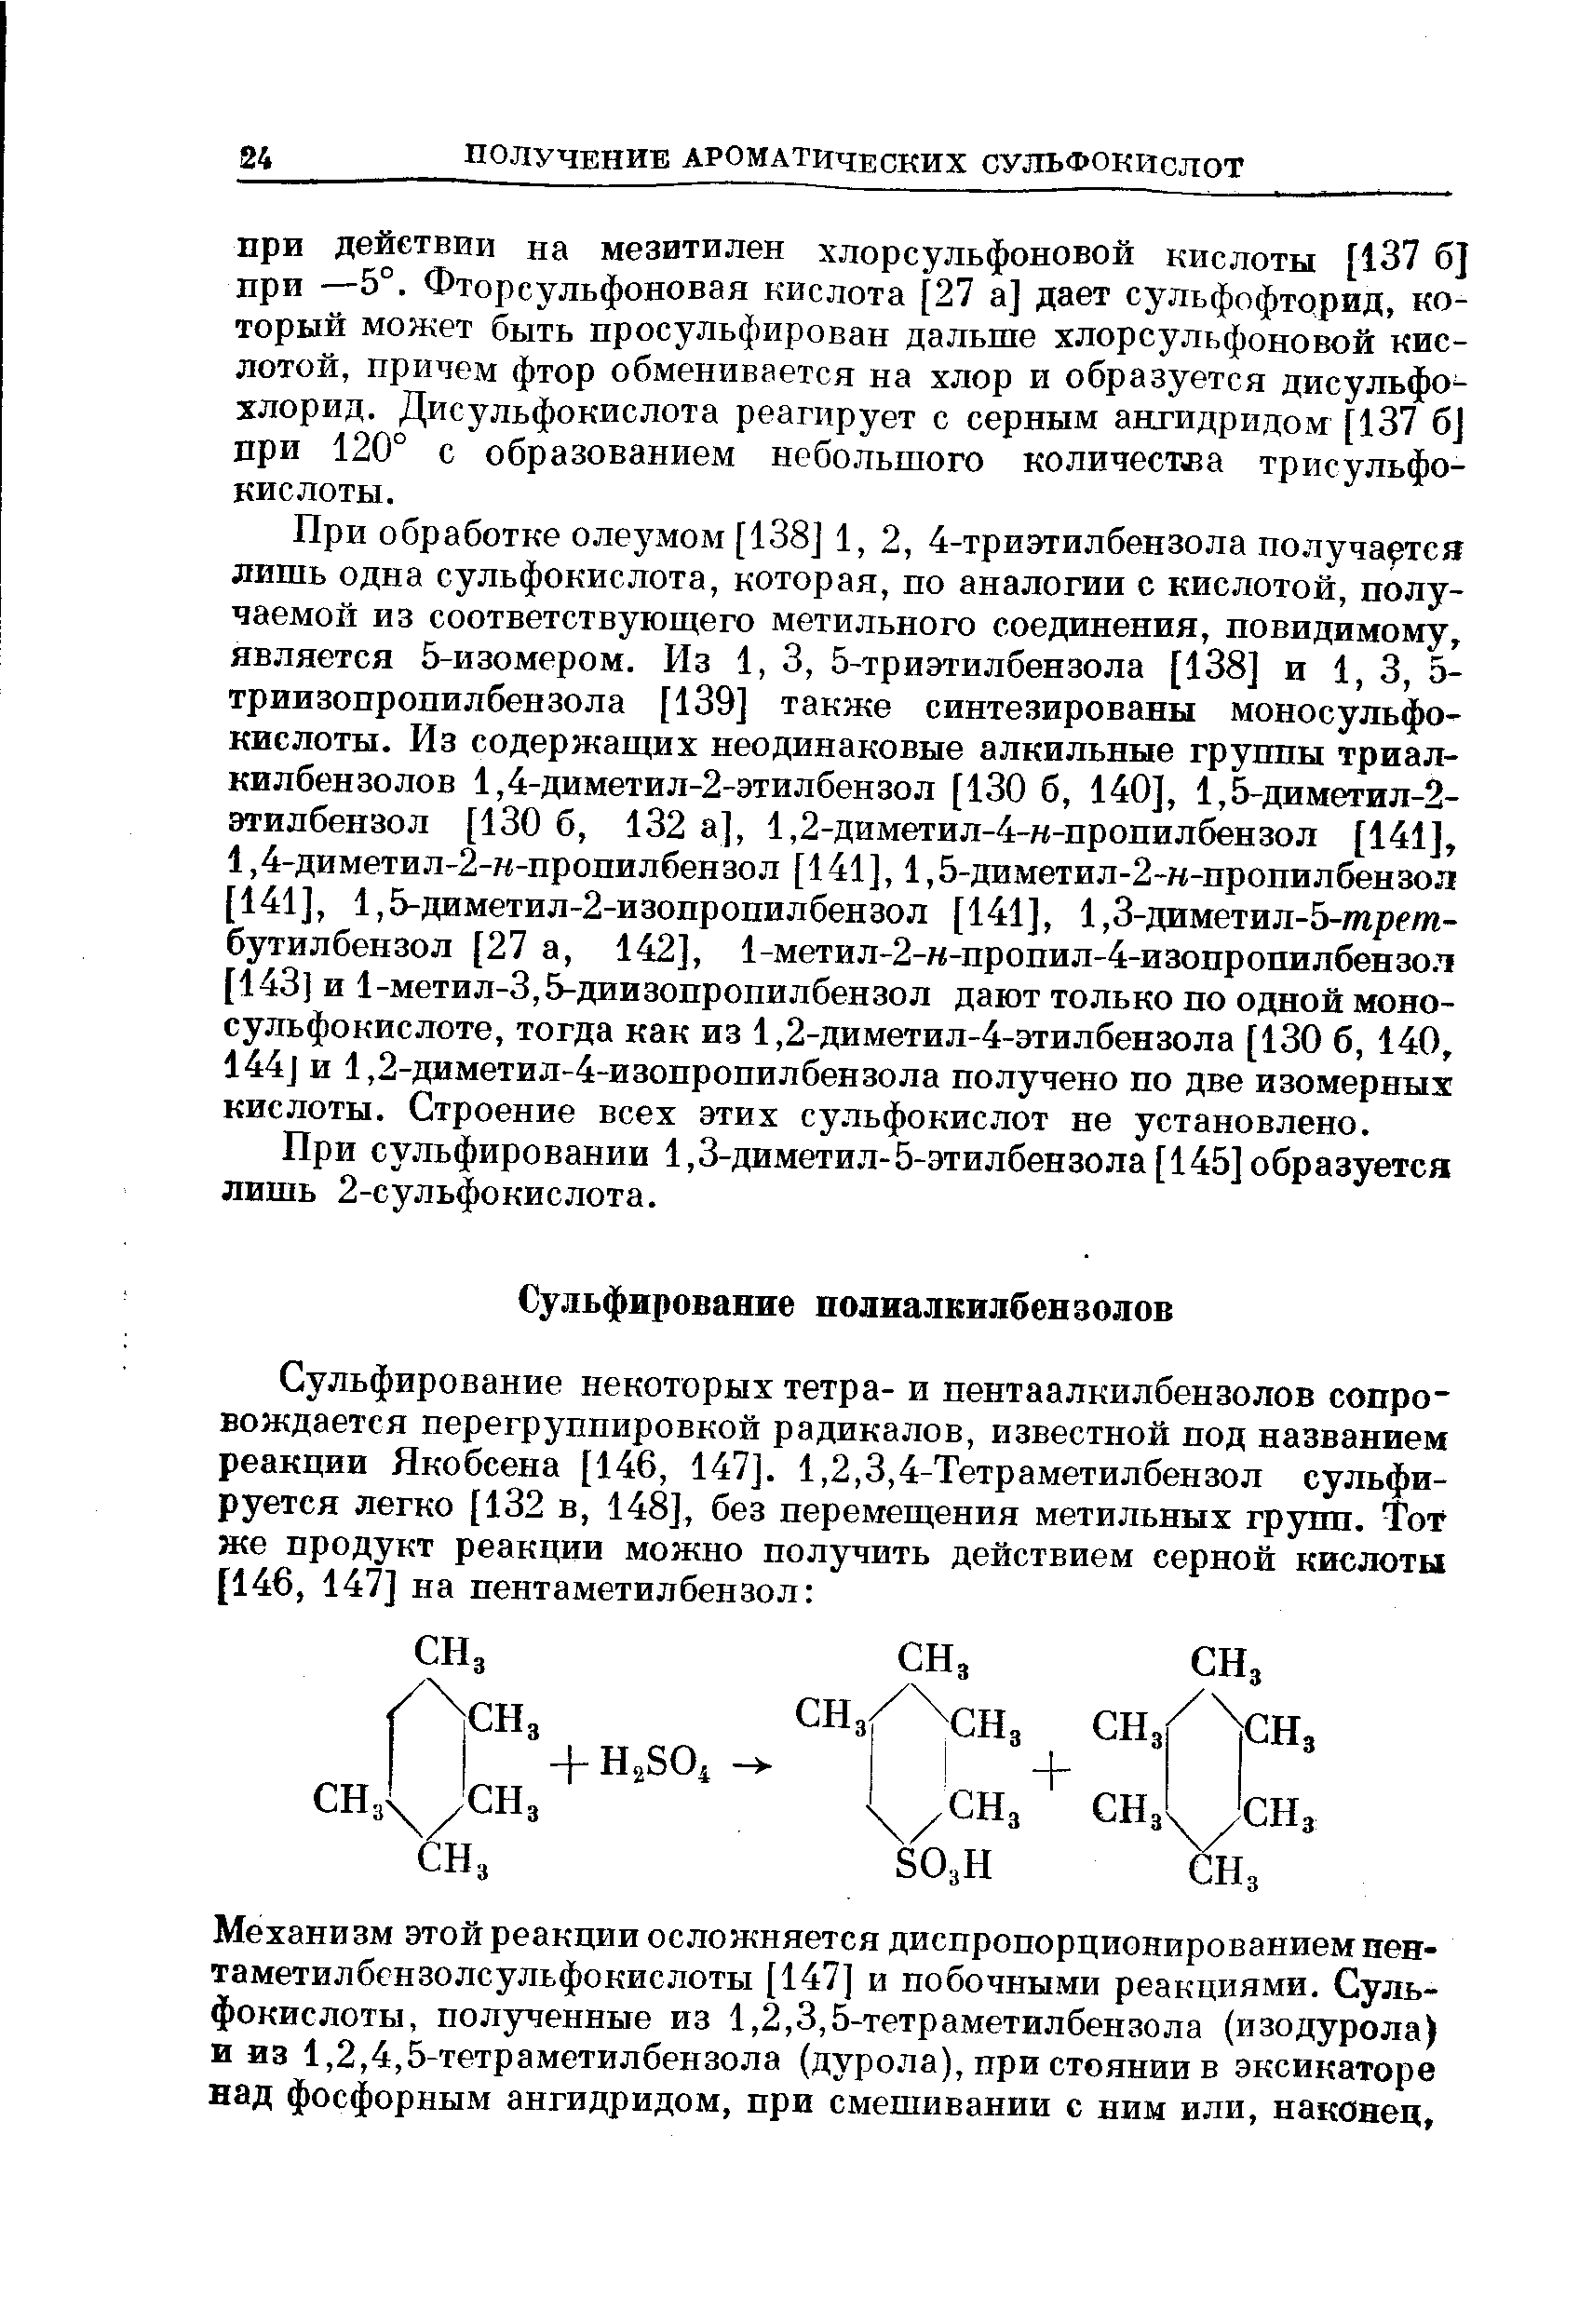 При сульфировании 1,3-диметил-5-этилбензола [145] образуется лишь 2-сульфокислота.